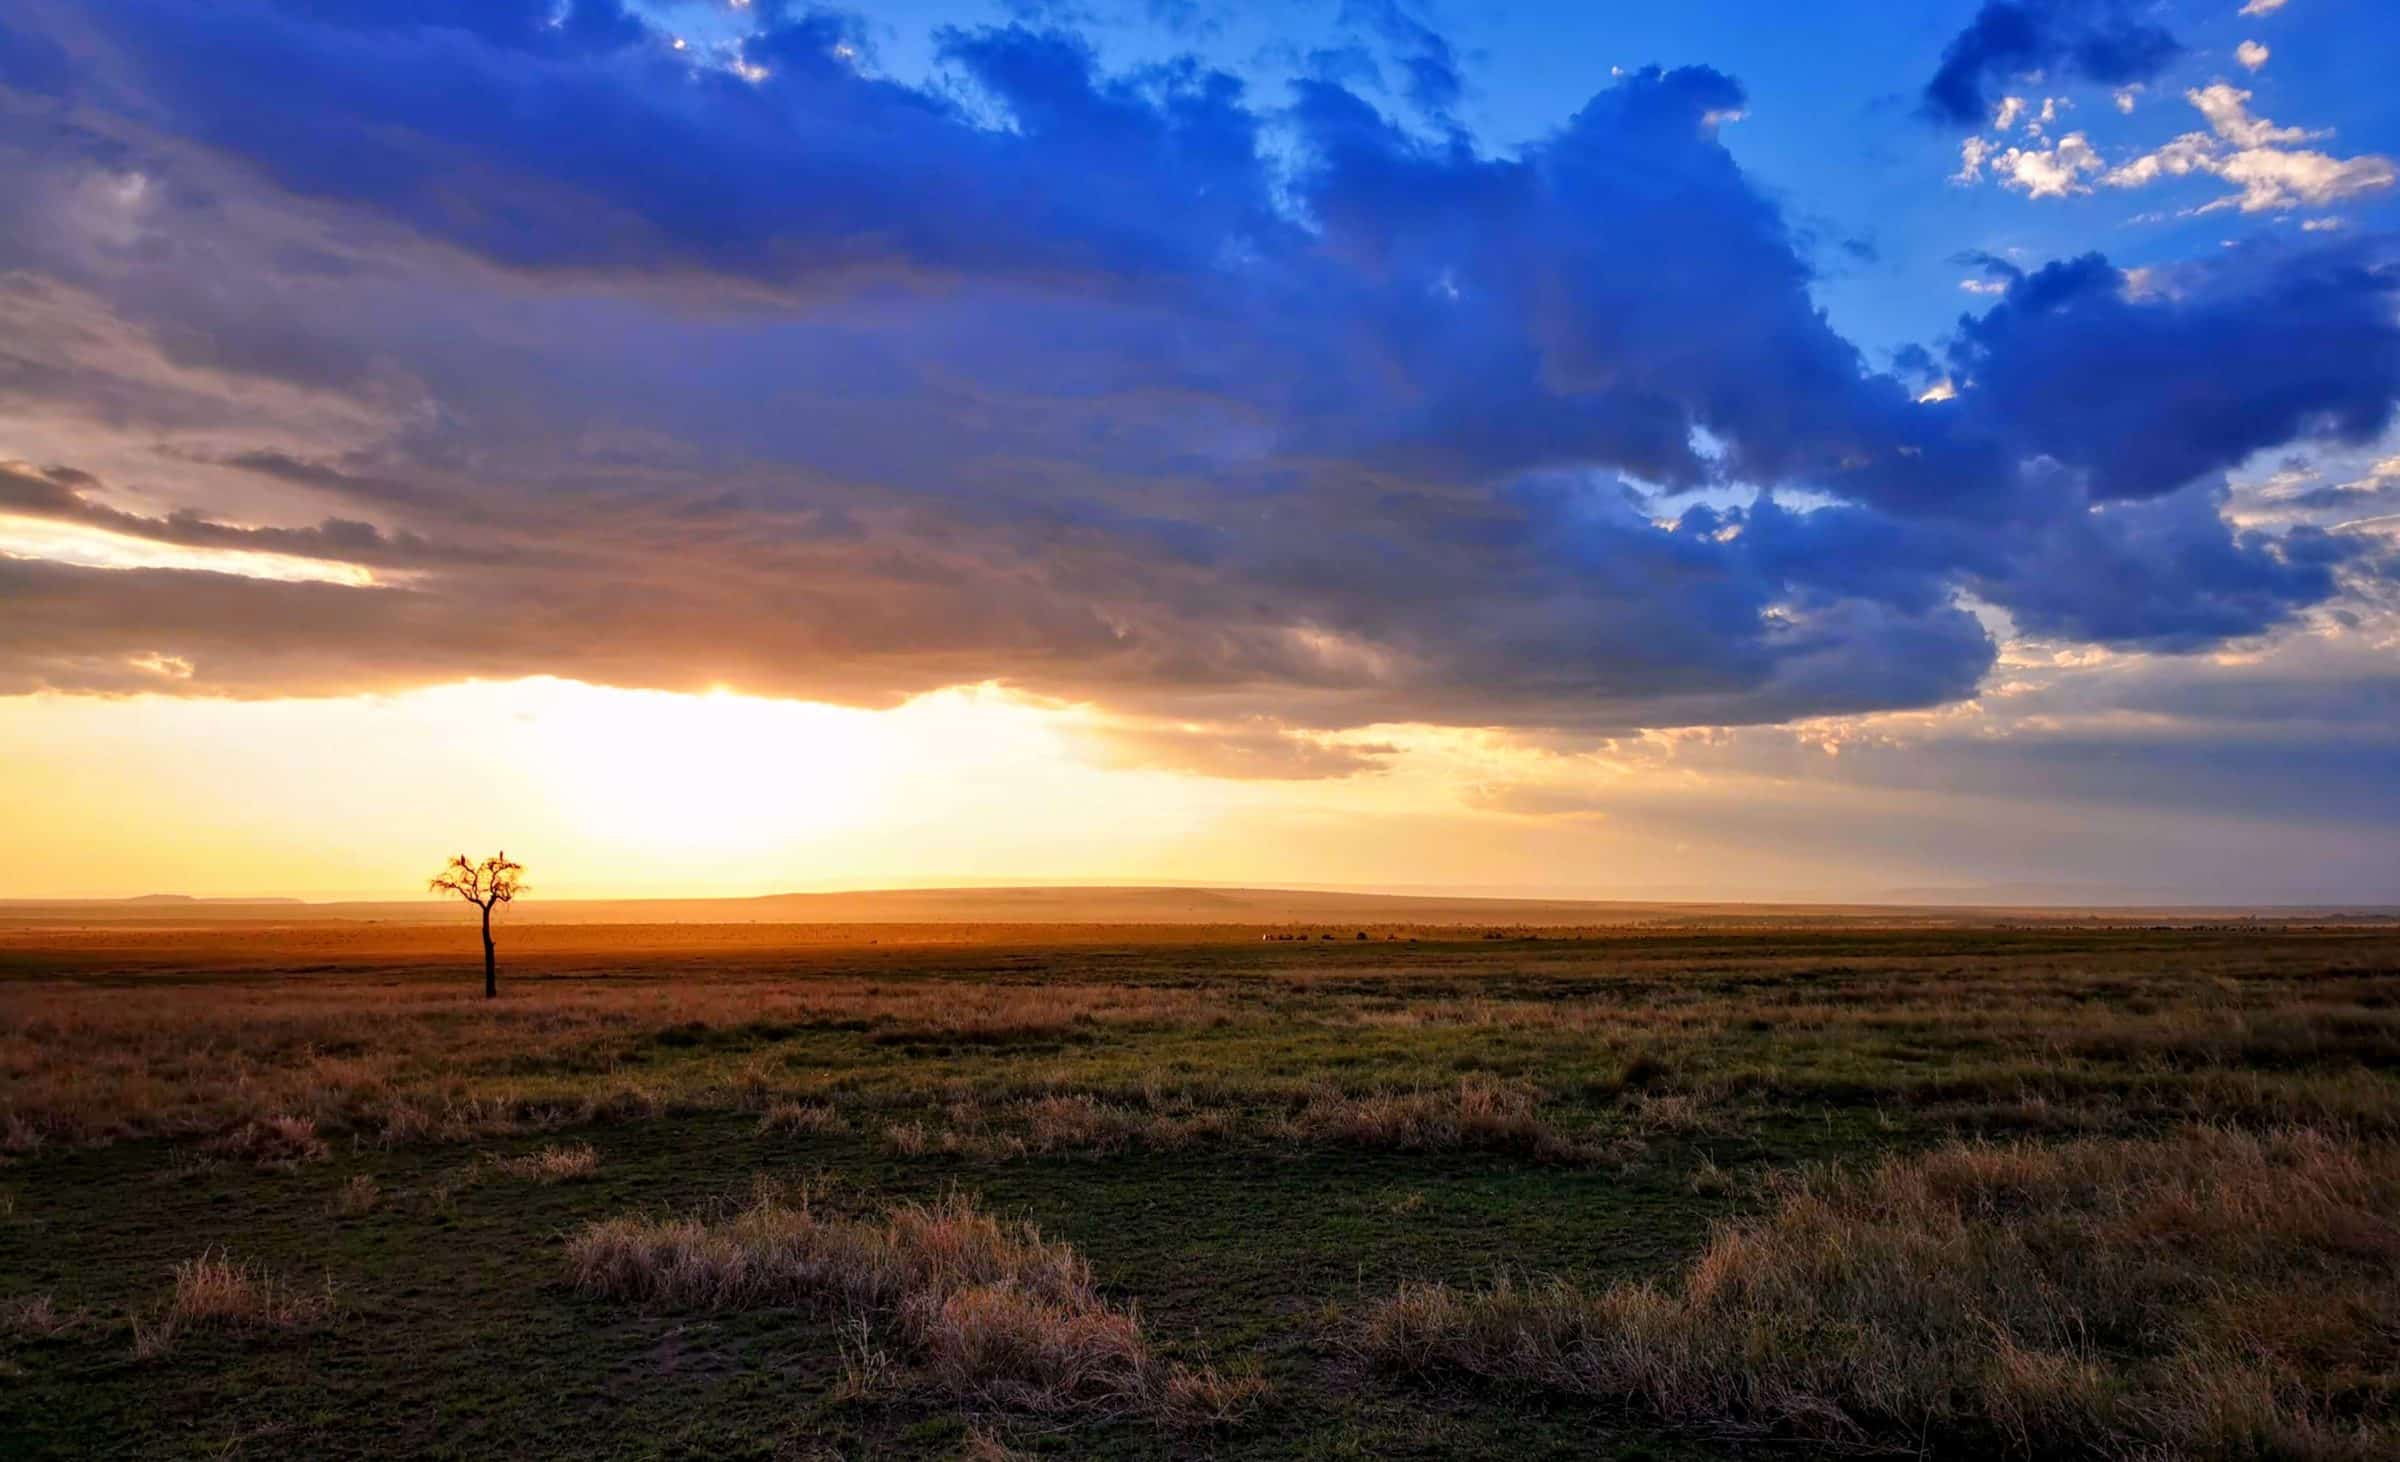 Veliki oblaki, potepuška drevesa in nekaj živali v ozadju. Samo še en dan v Maasai Mara